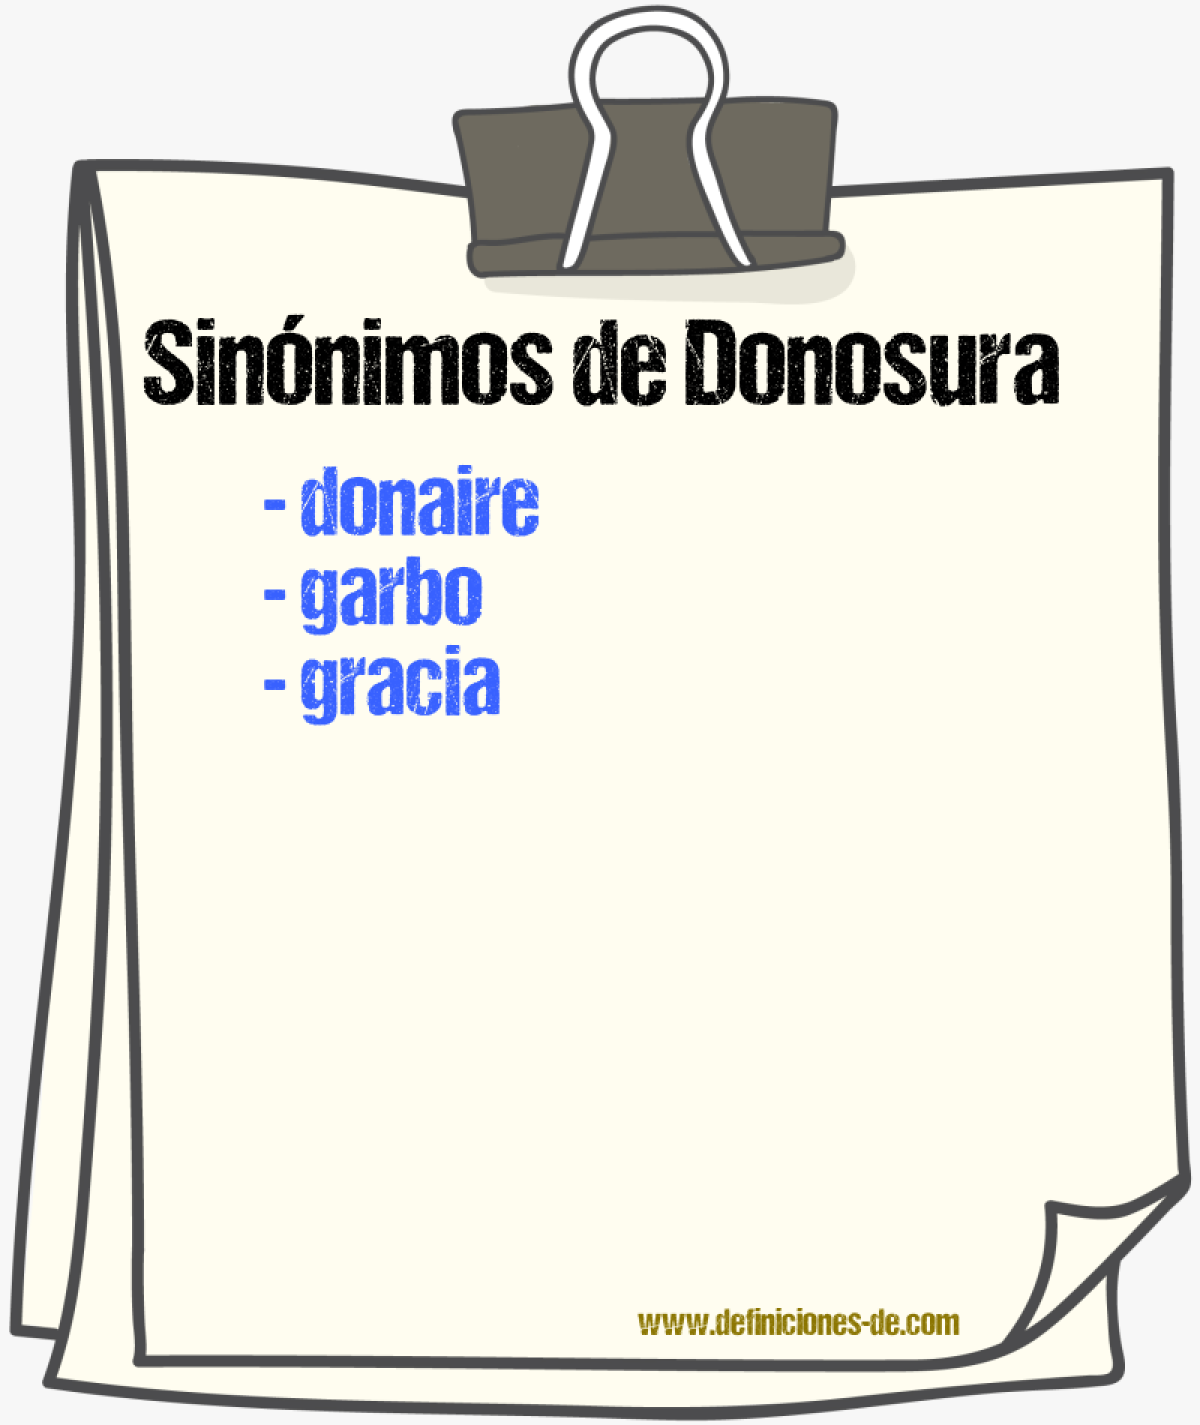 Sinónimos de donosura